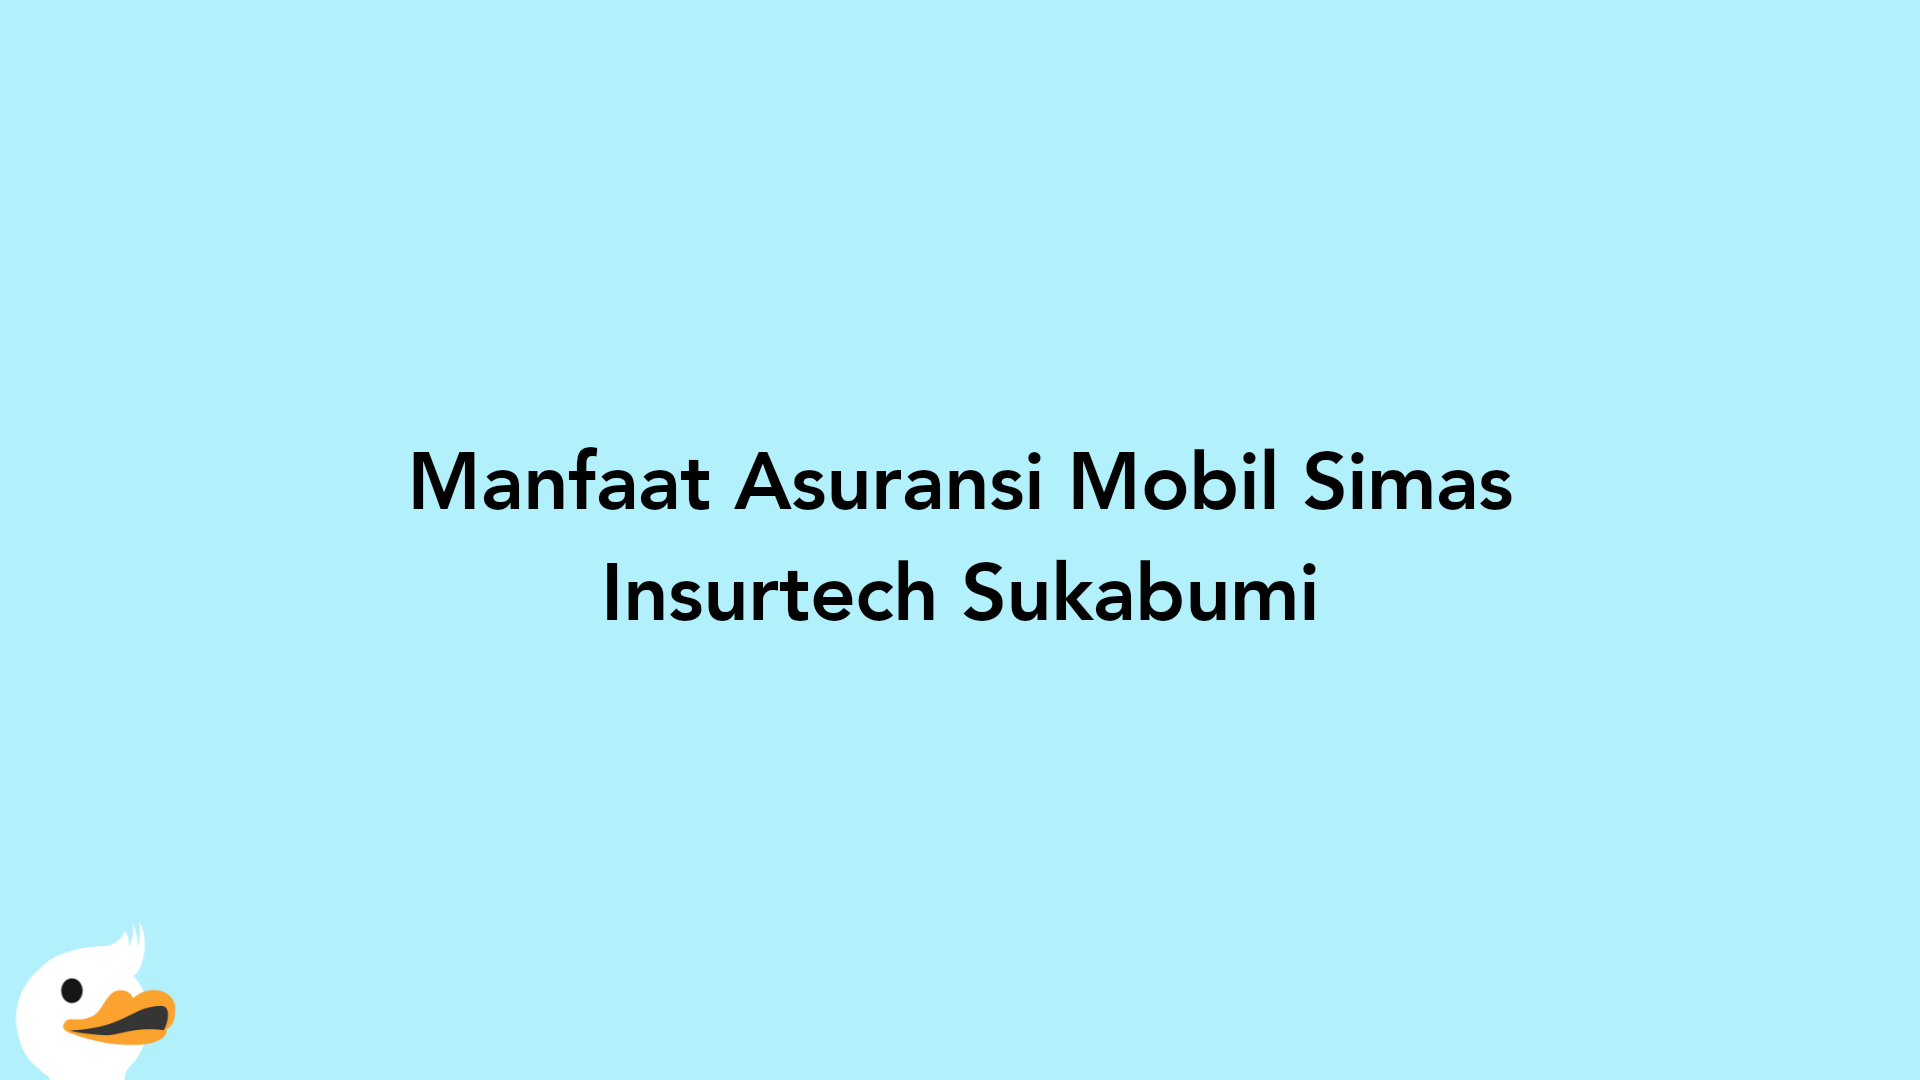 Manfaat Asuransi Mobil Simas Insurtech Sukabumi